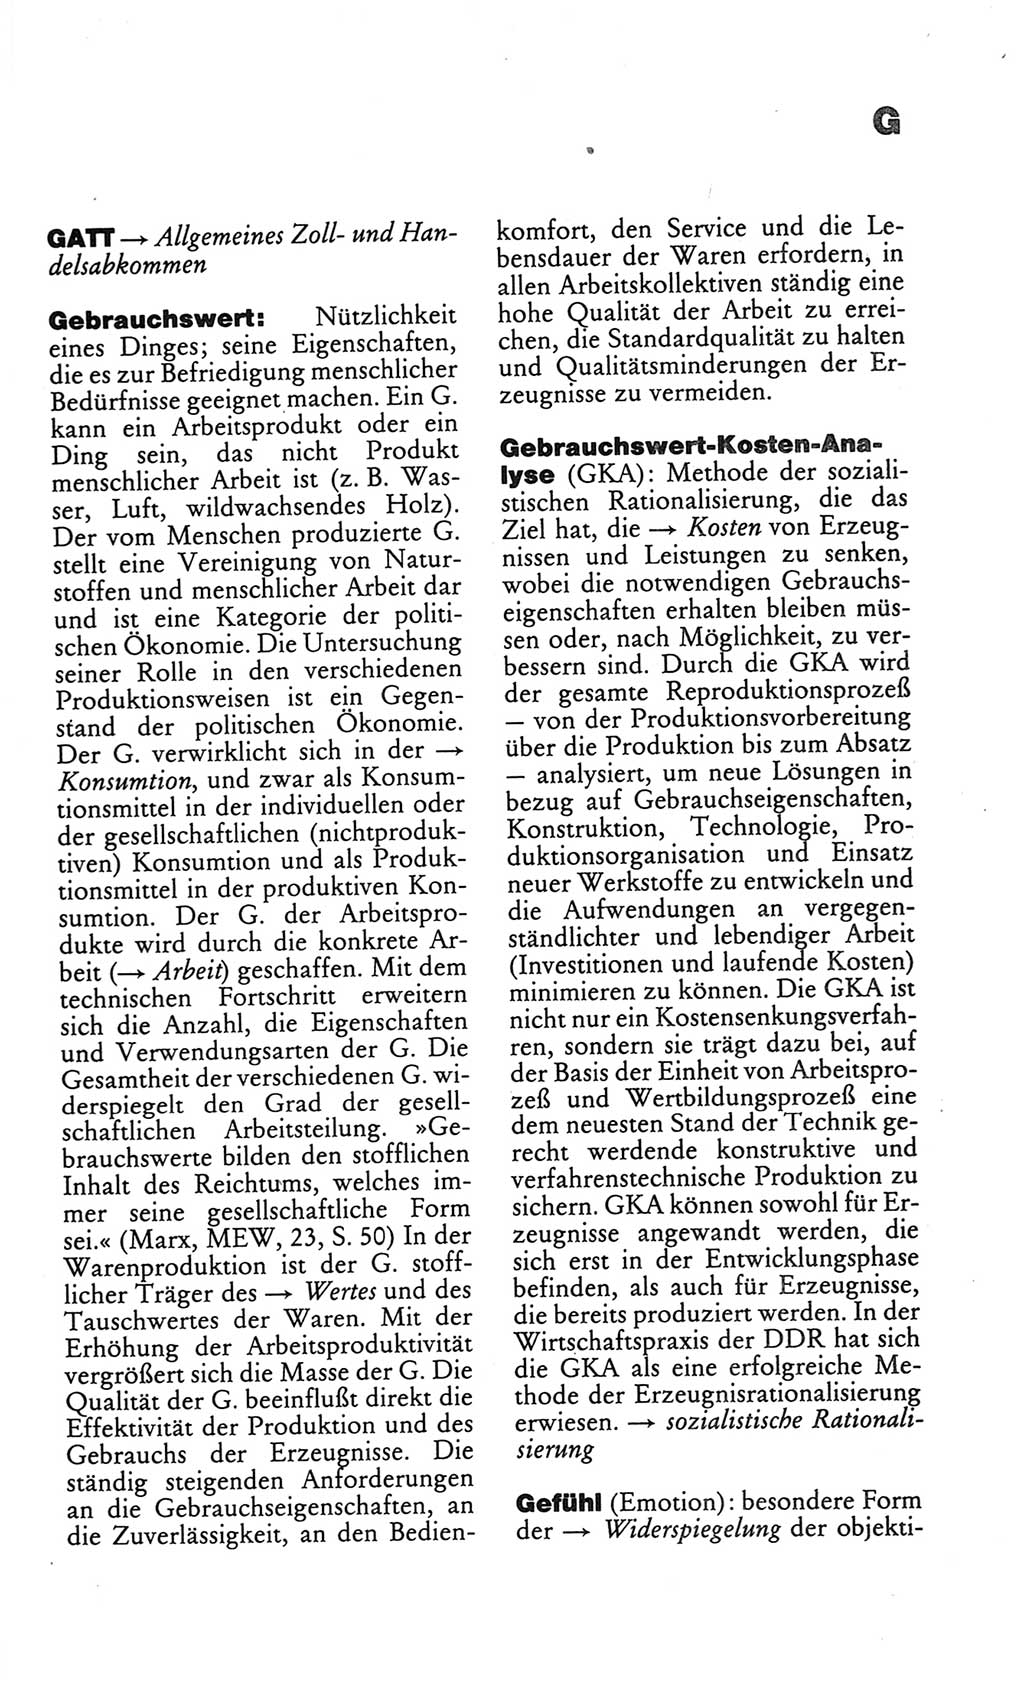 Kleines politisches Wörterbuch [Deutsche Demokratische Republik (DDR)] 1986, Seite 285 (Kl. pol. Wb. DDR 1986, S. 285)